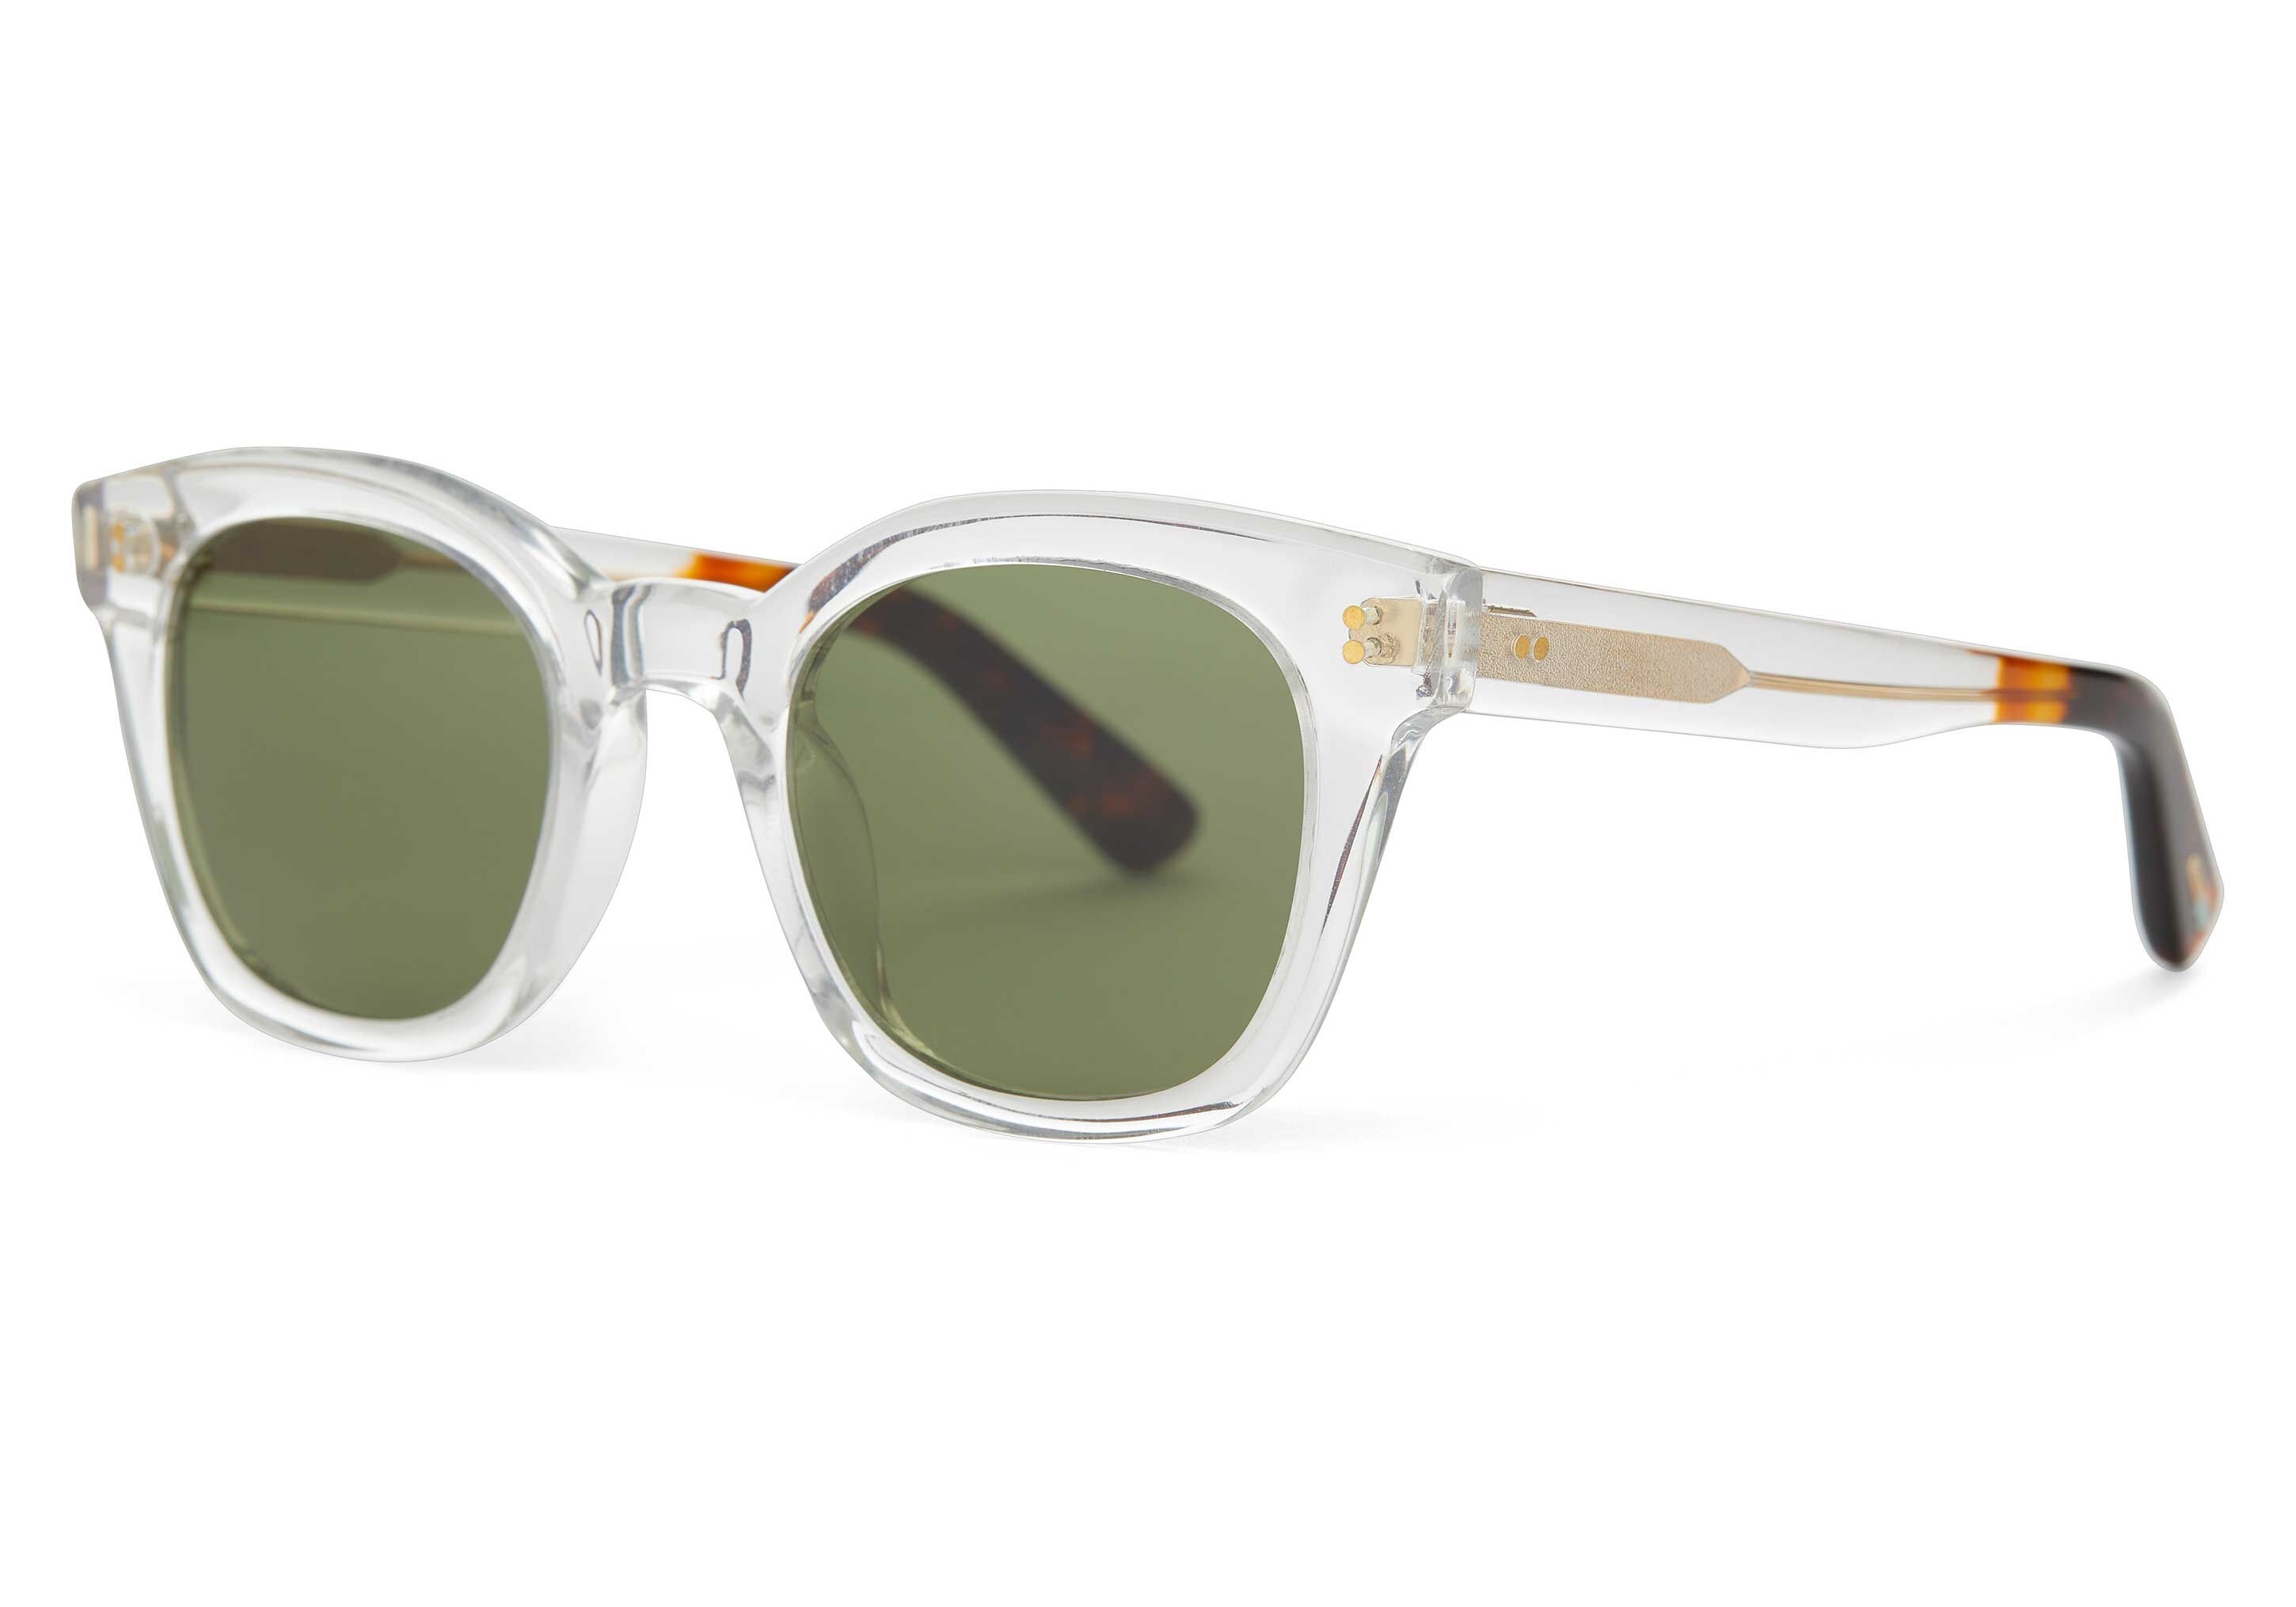 Nividas Eyewear Atlantic Sunglasses Crystal Clear at CareOfCarl.com